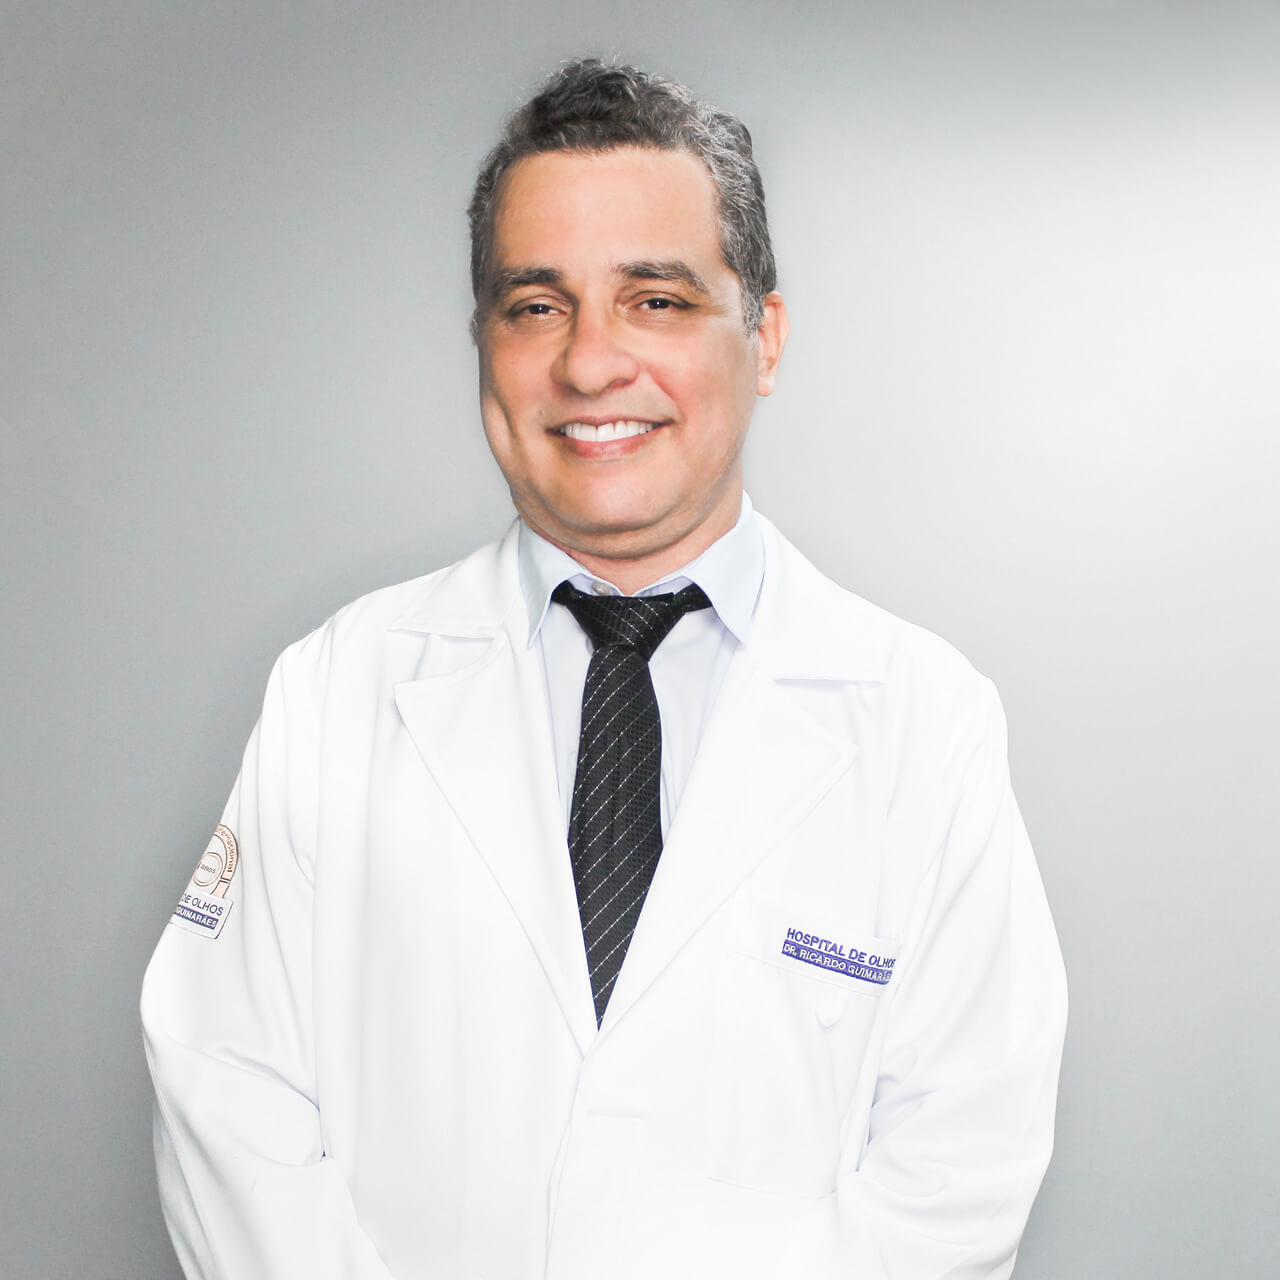 Dr. Anderson Giovanni Ferreira